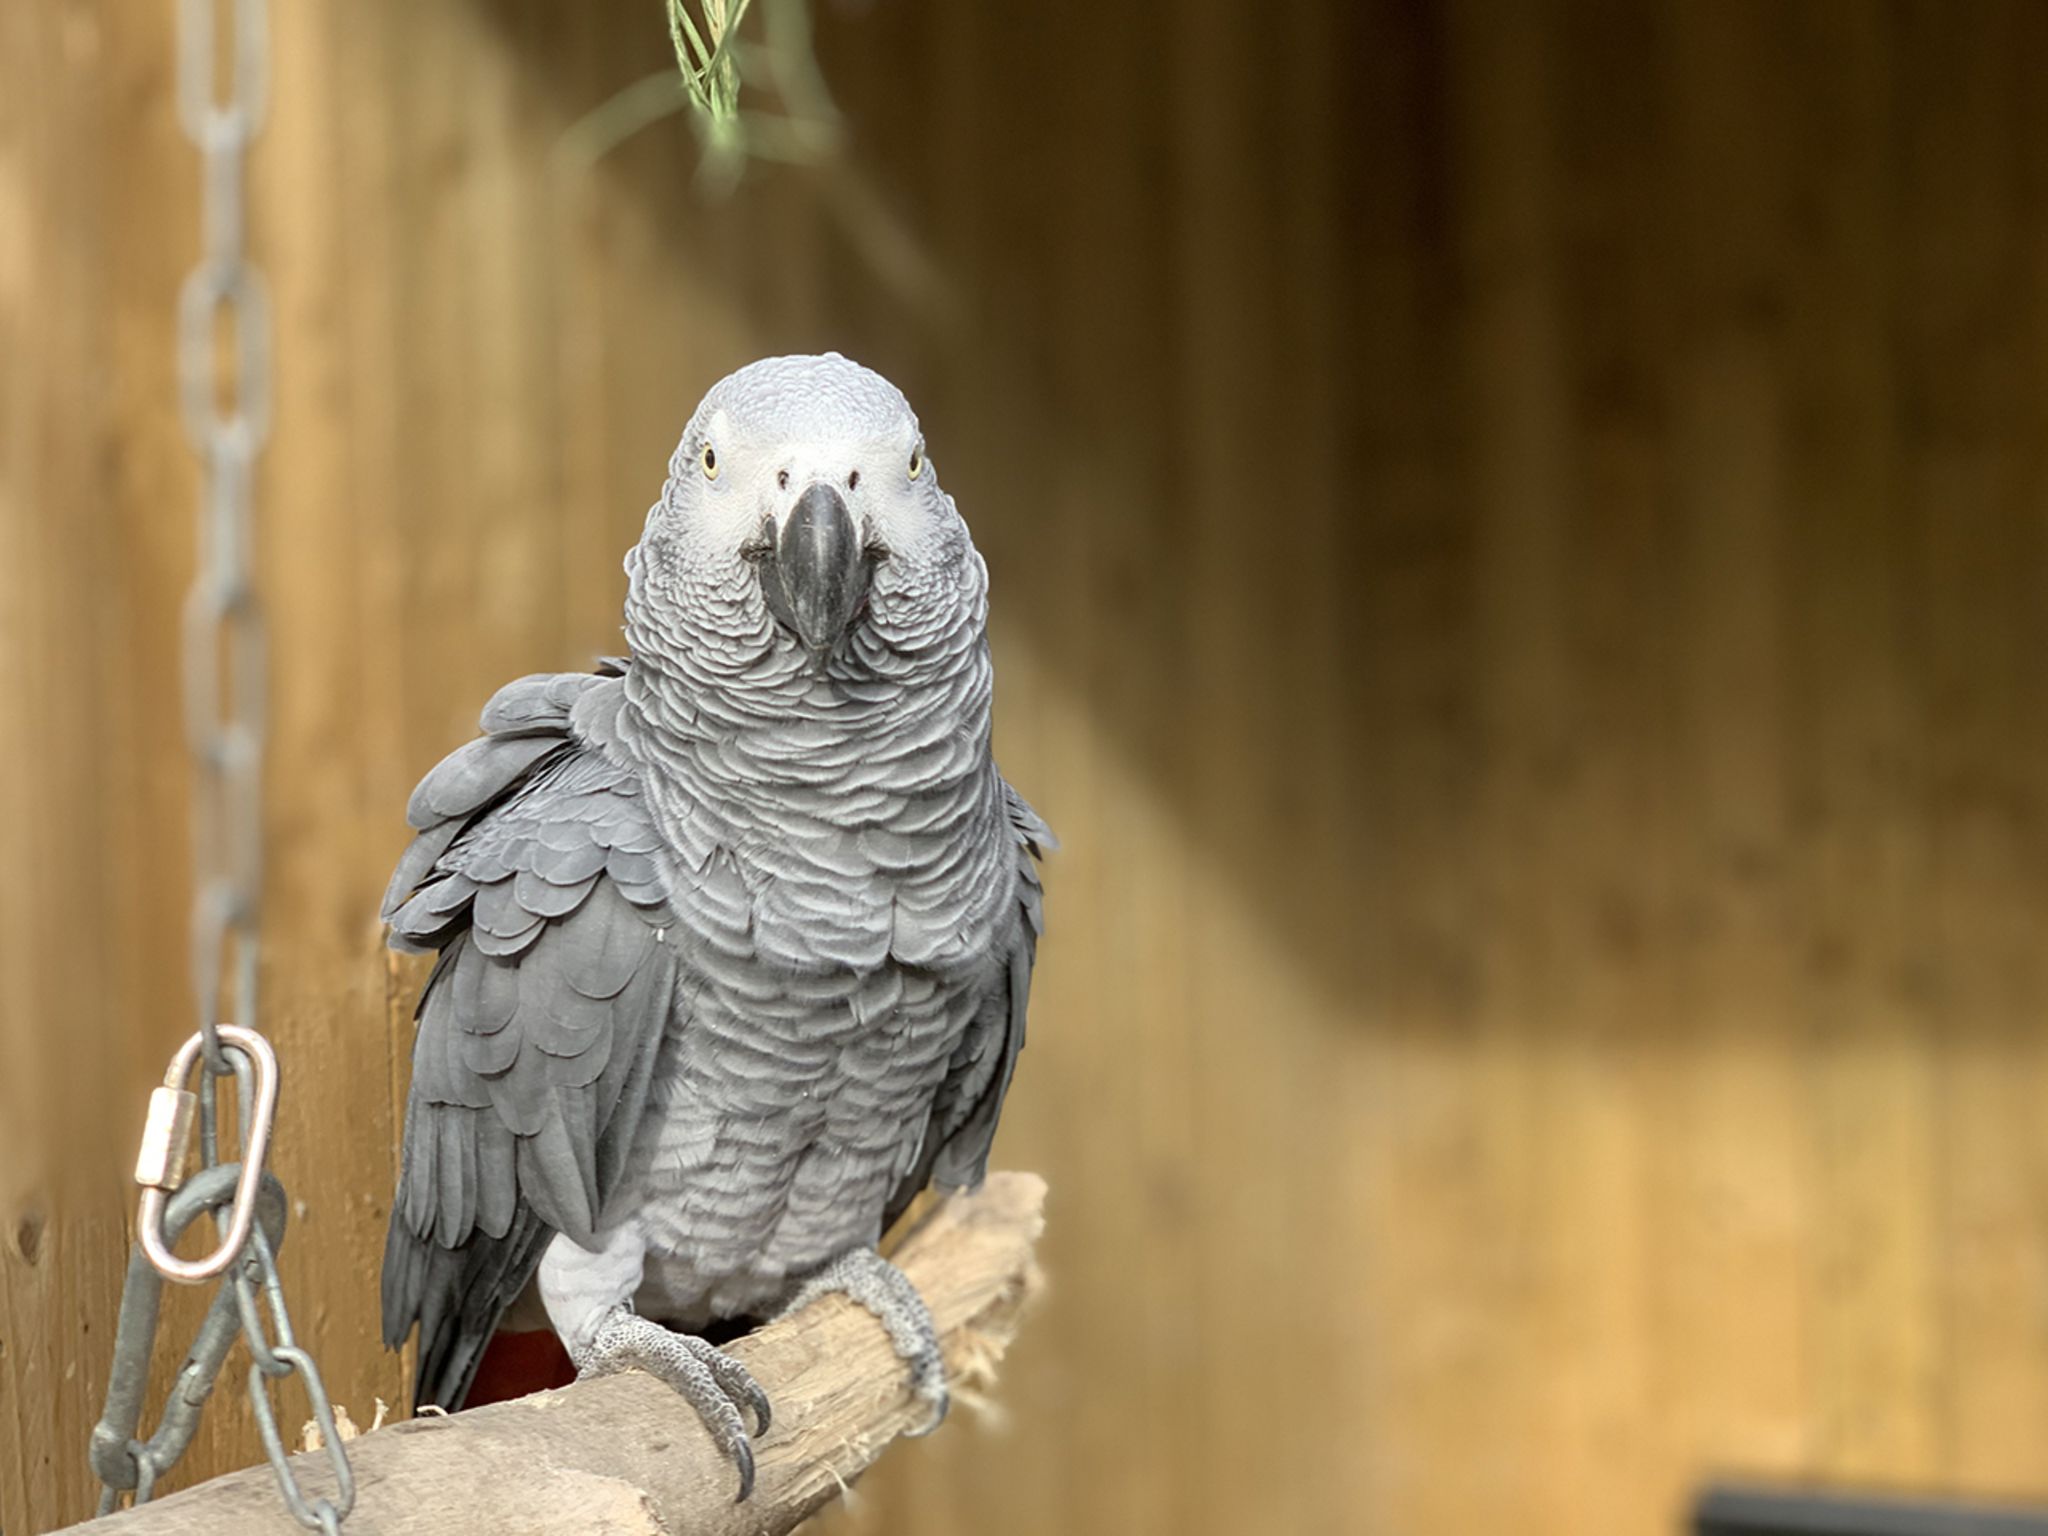  Papagei Hintergrundbild 2048x1536. Fluchende Vögel: Papageien Beschimpfen Park Besucher Müssen Getrennt Werden [GEO]